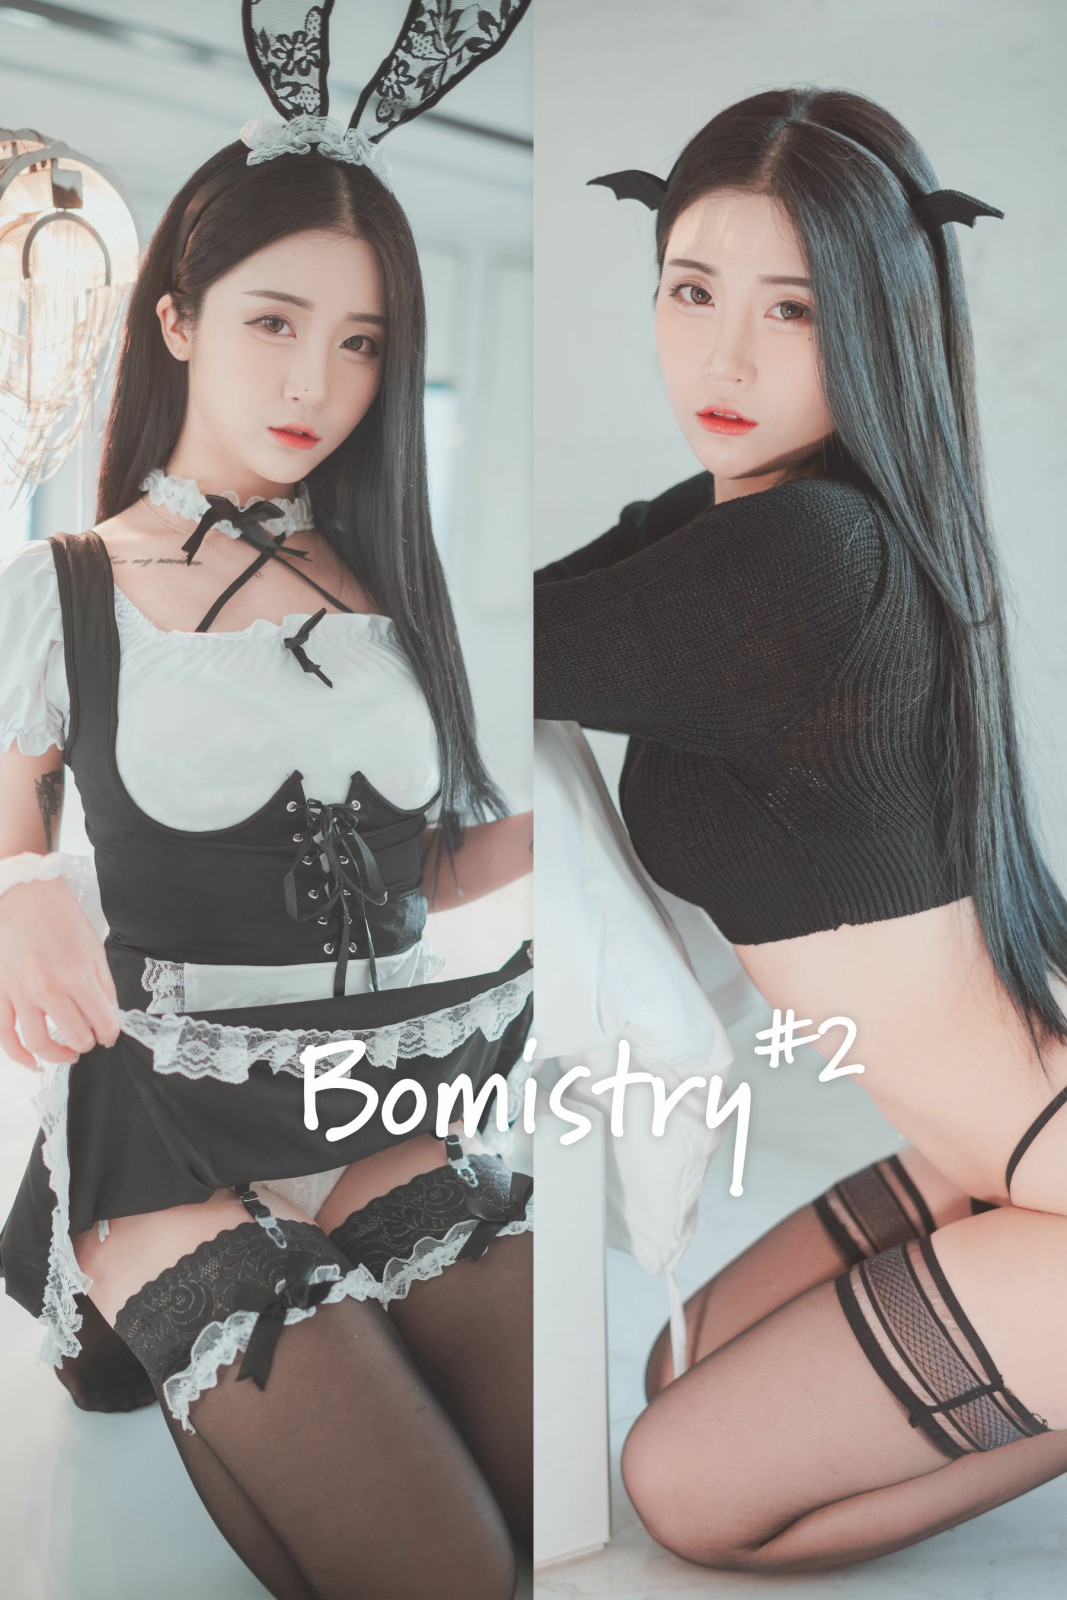 [DJAWA] Bomi - Bomistry #2 第1张